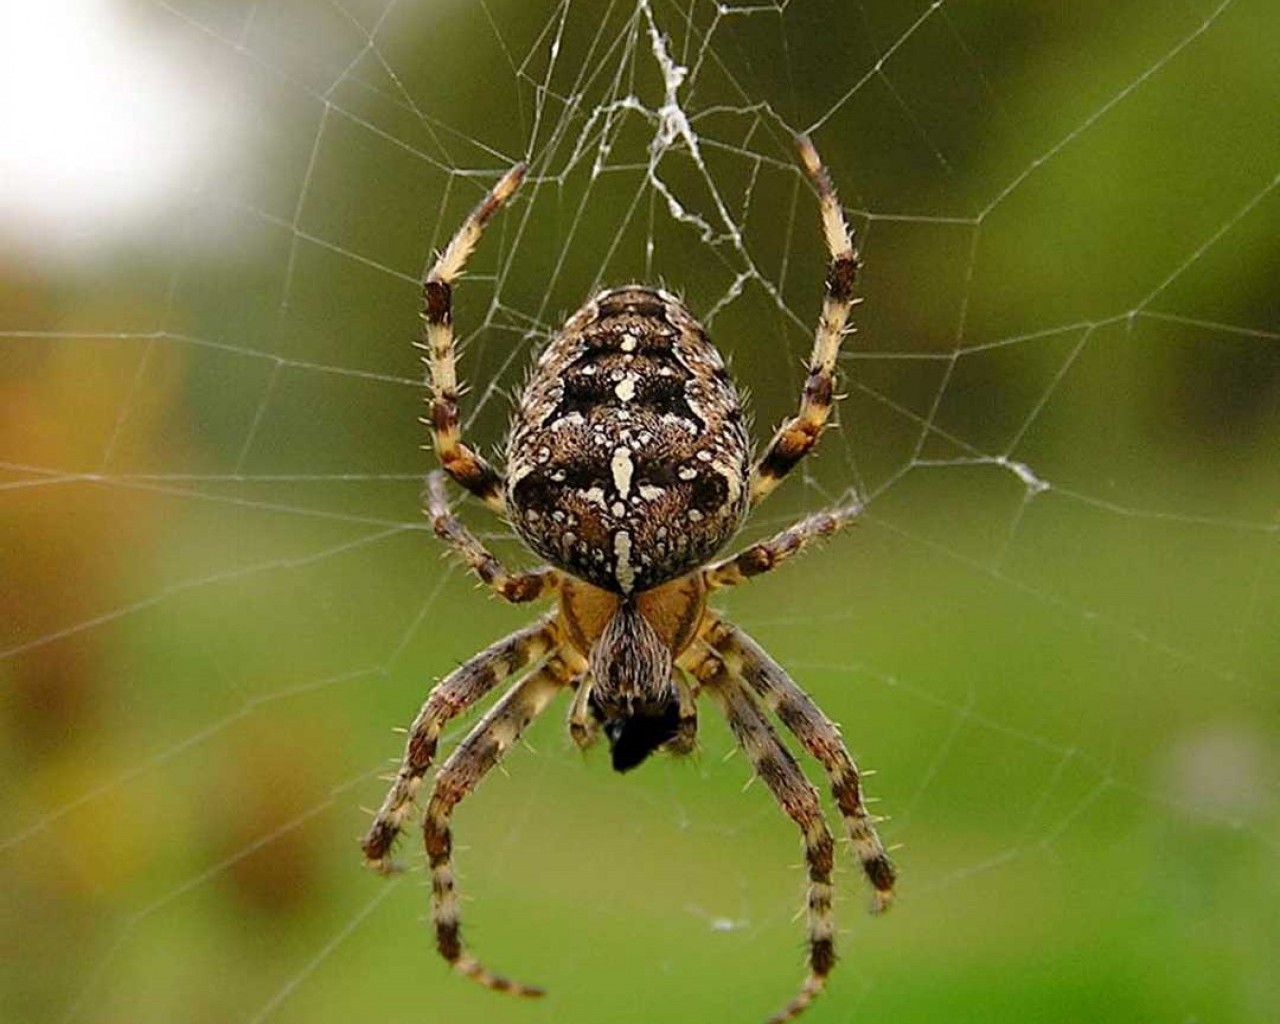 Изучаем пауков - их разнообразие, удивительные особенности и важную роль в экосистеме